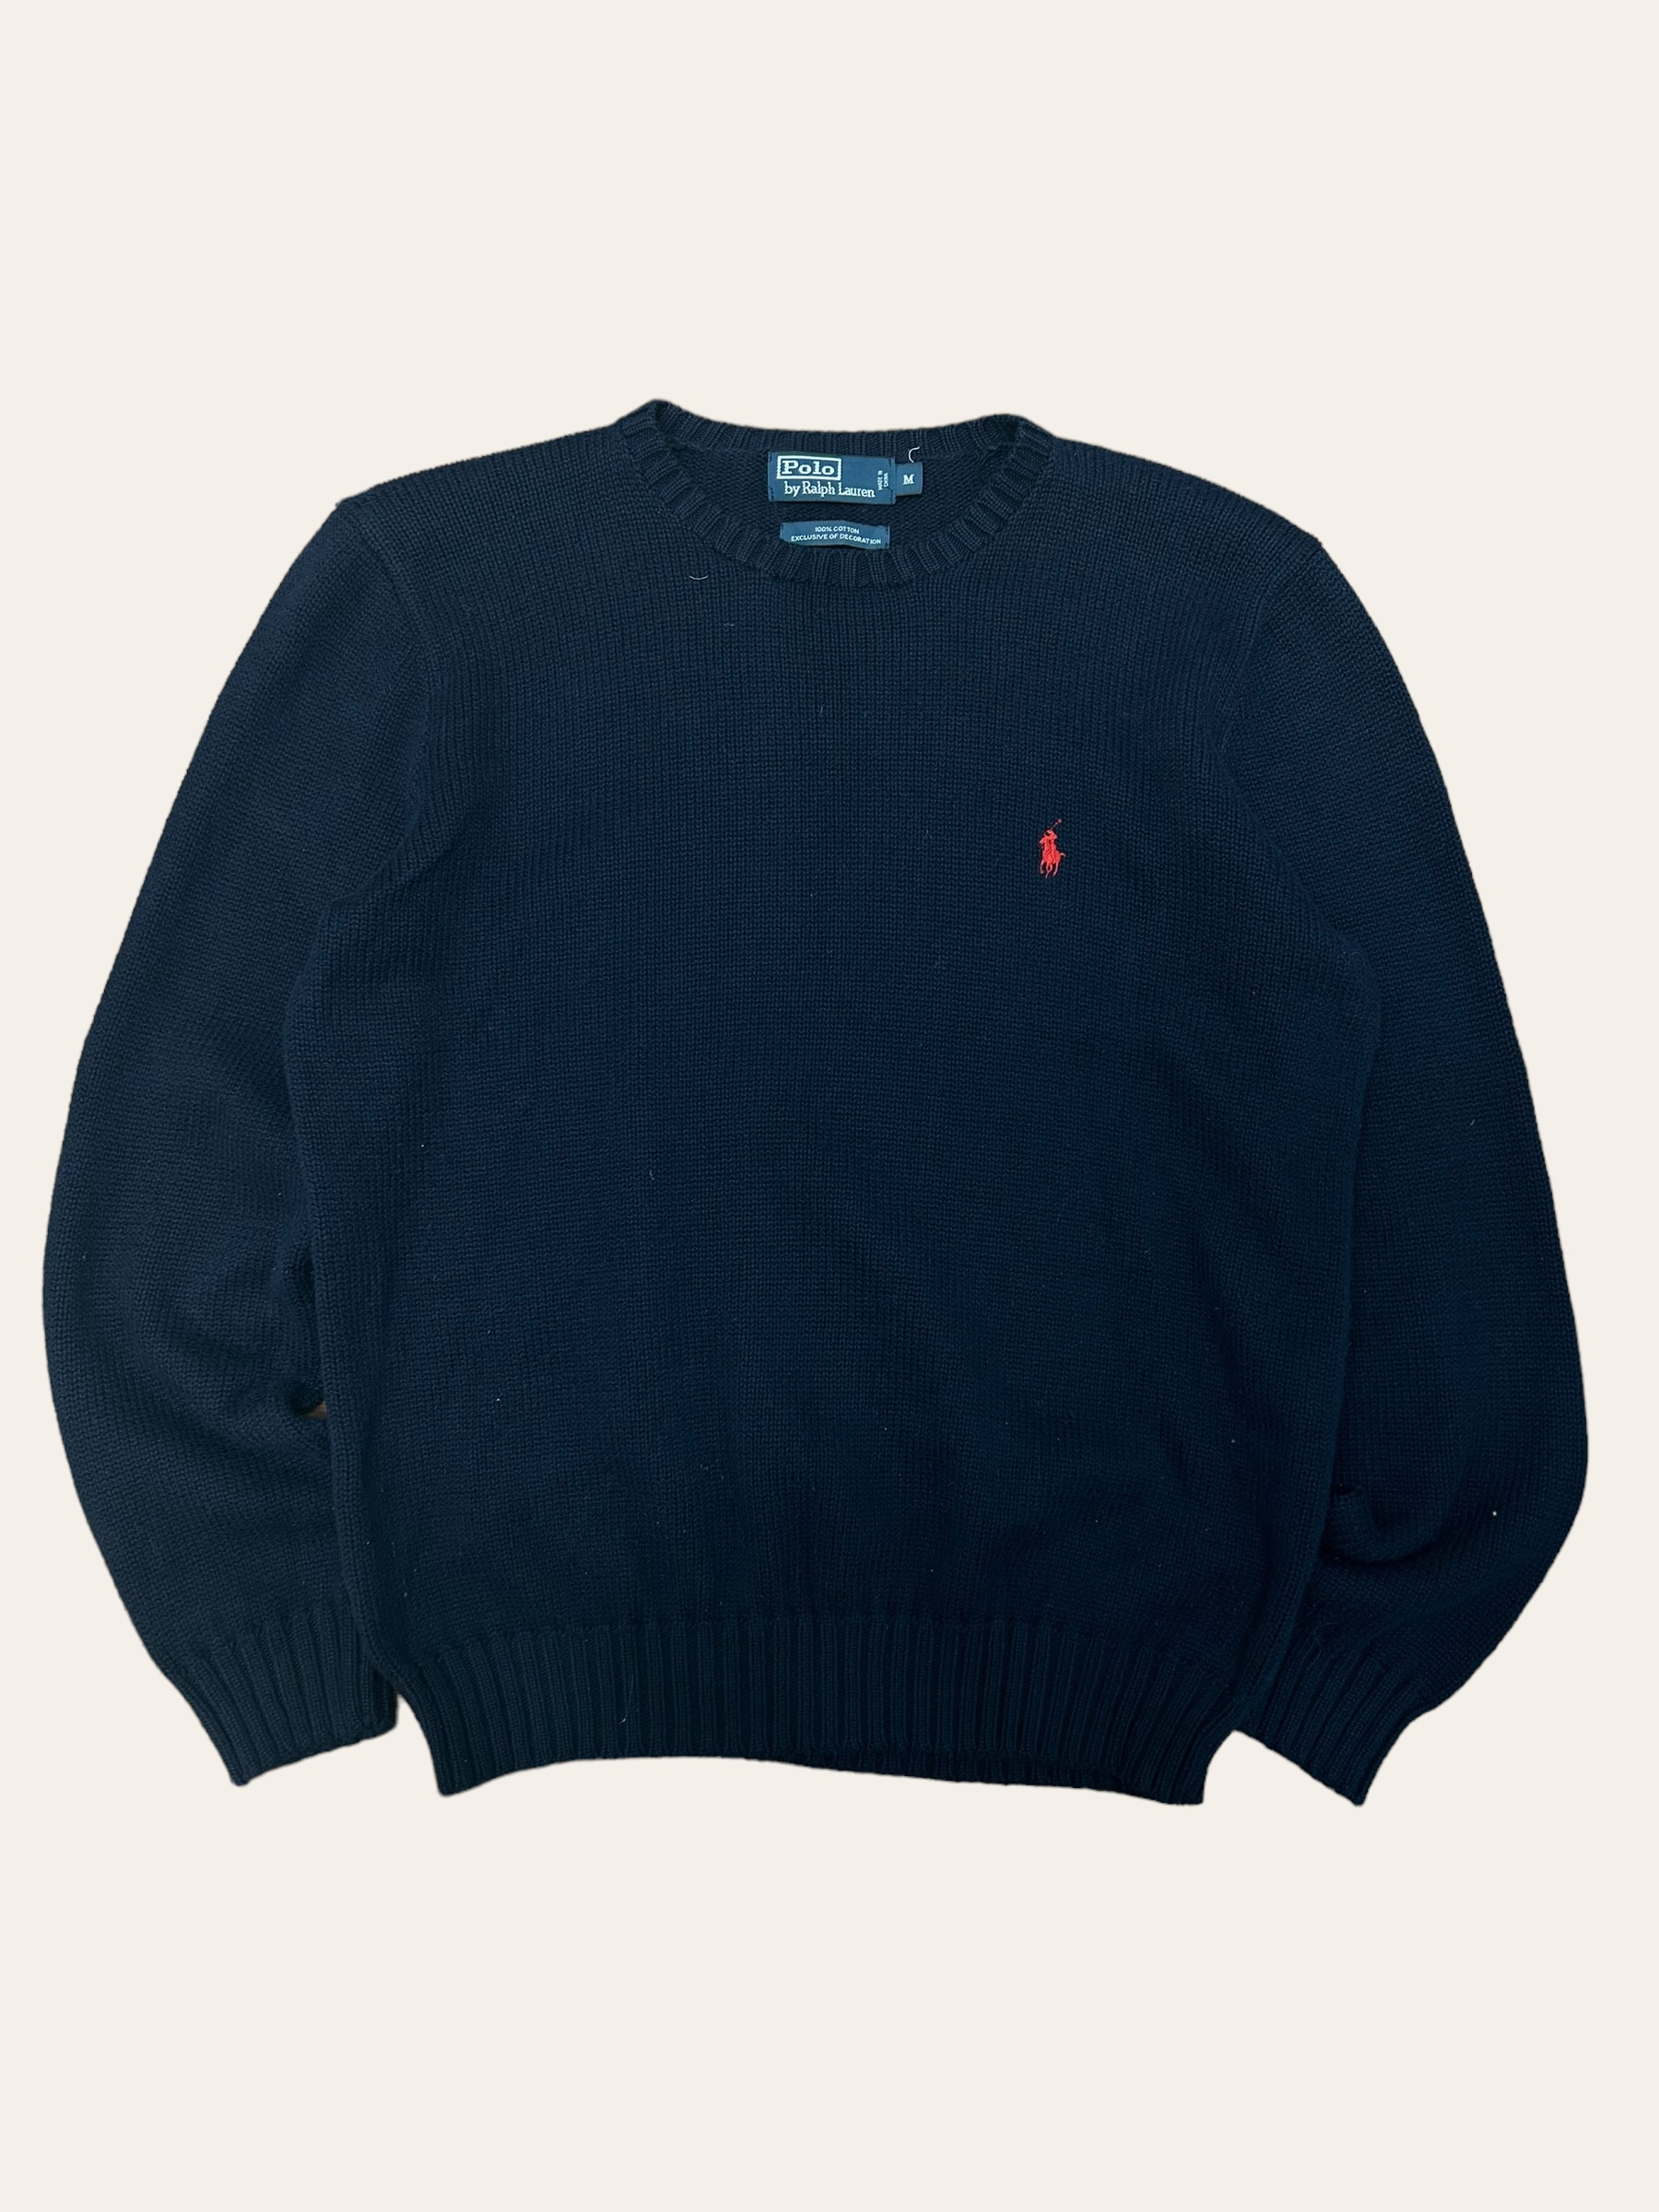 Polo ralph lauren navy color cotton crewneck sweater M